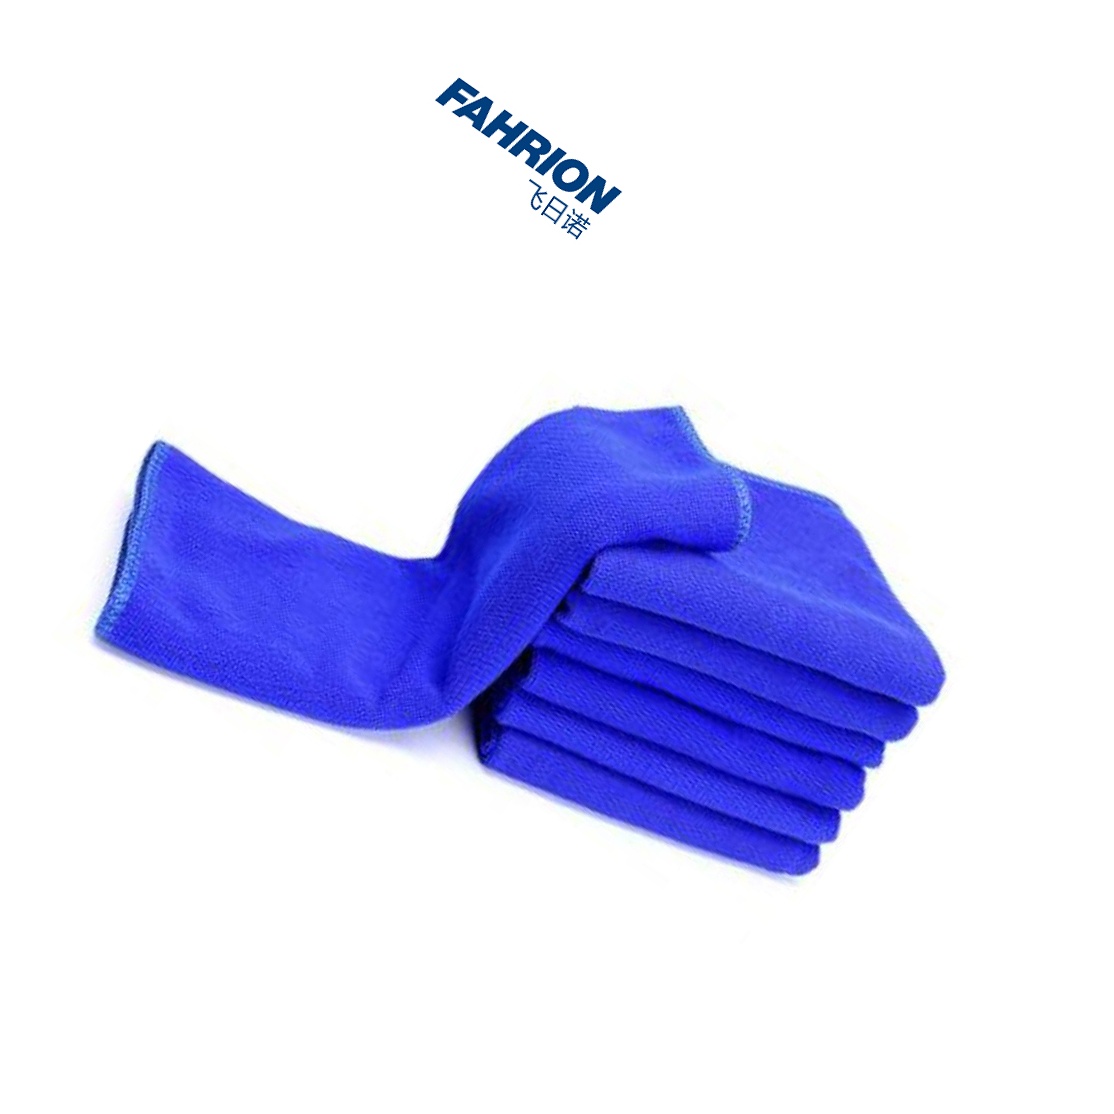 FAHRION 蓝毛巾 GD99-900-2487